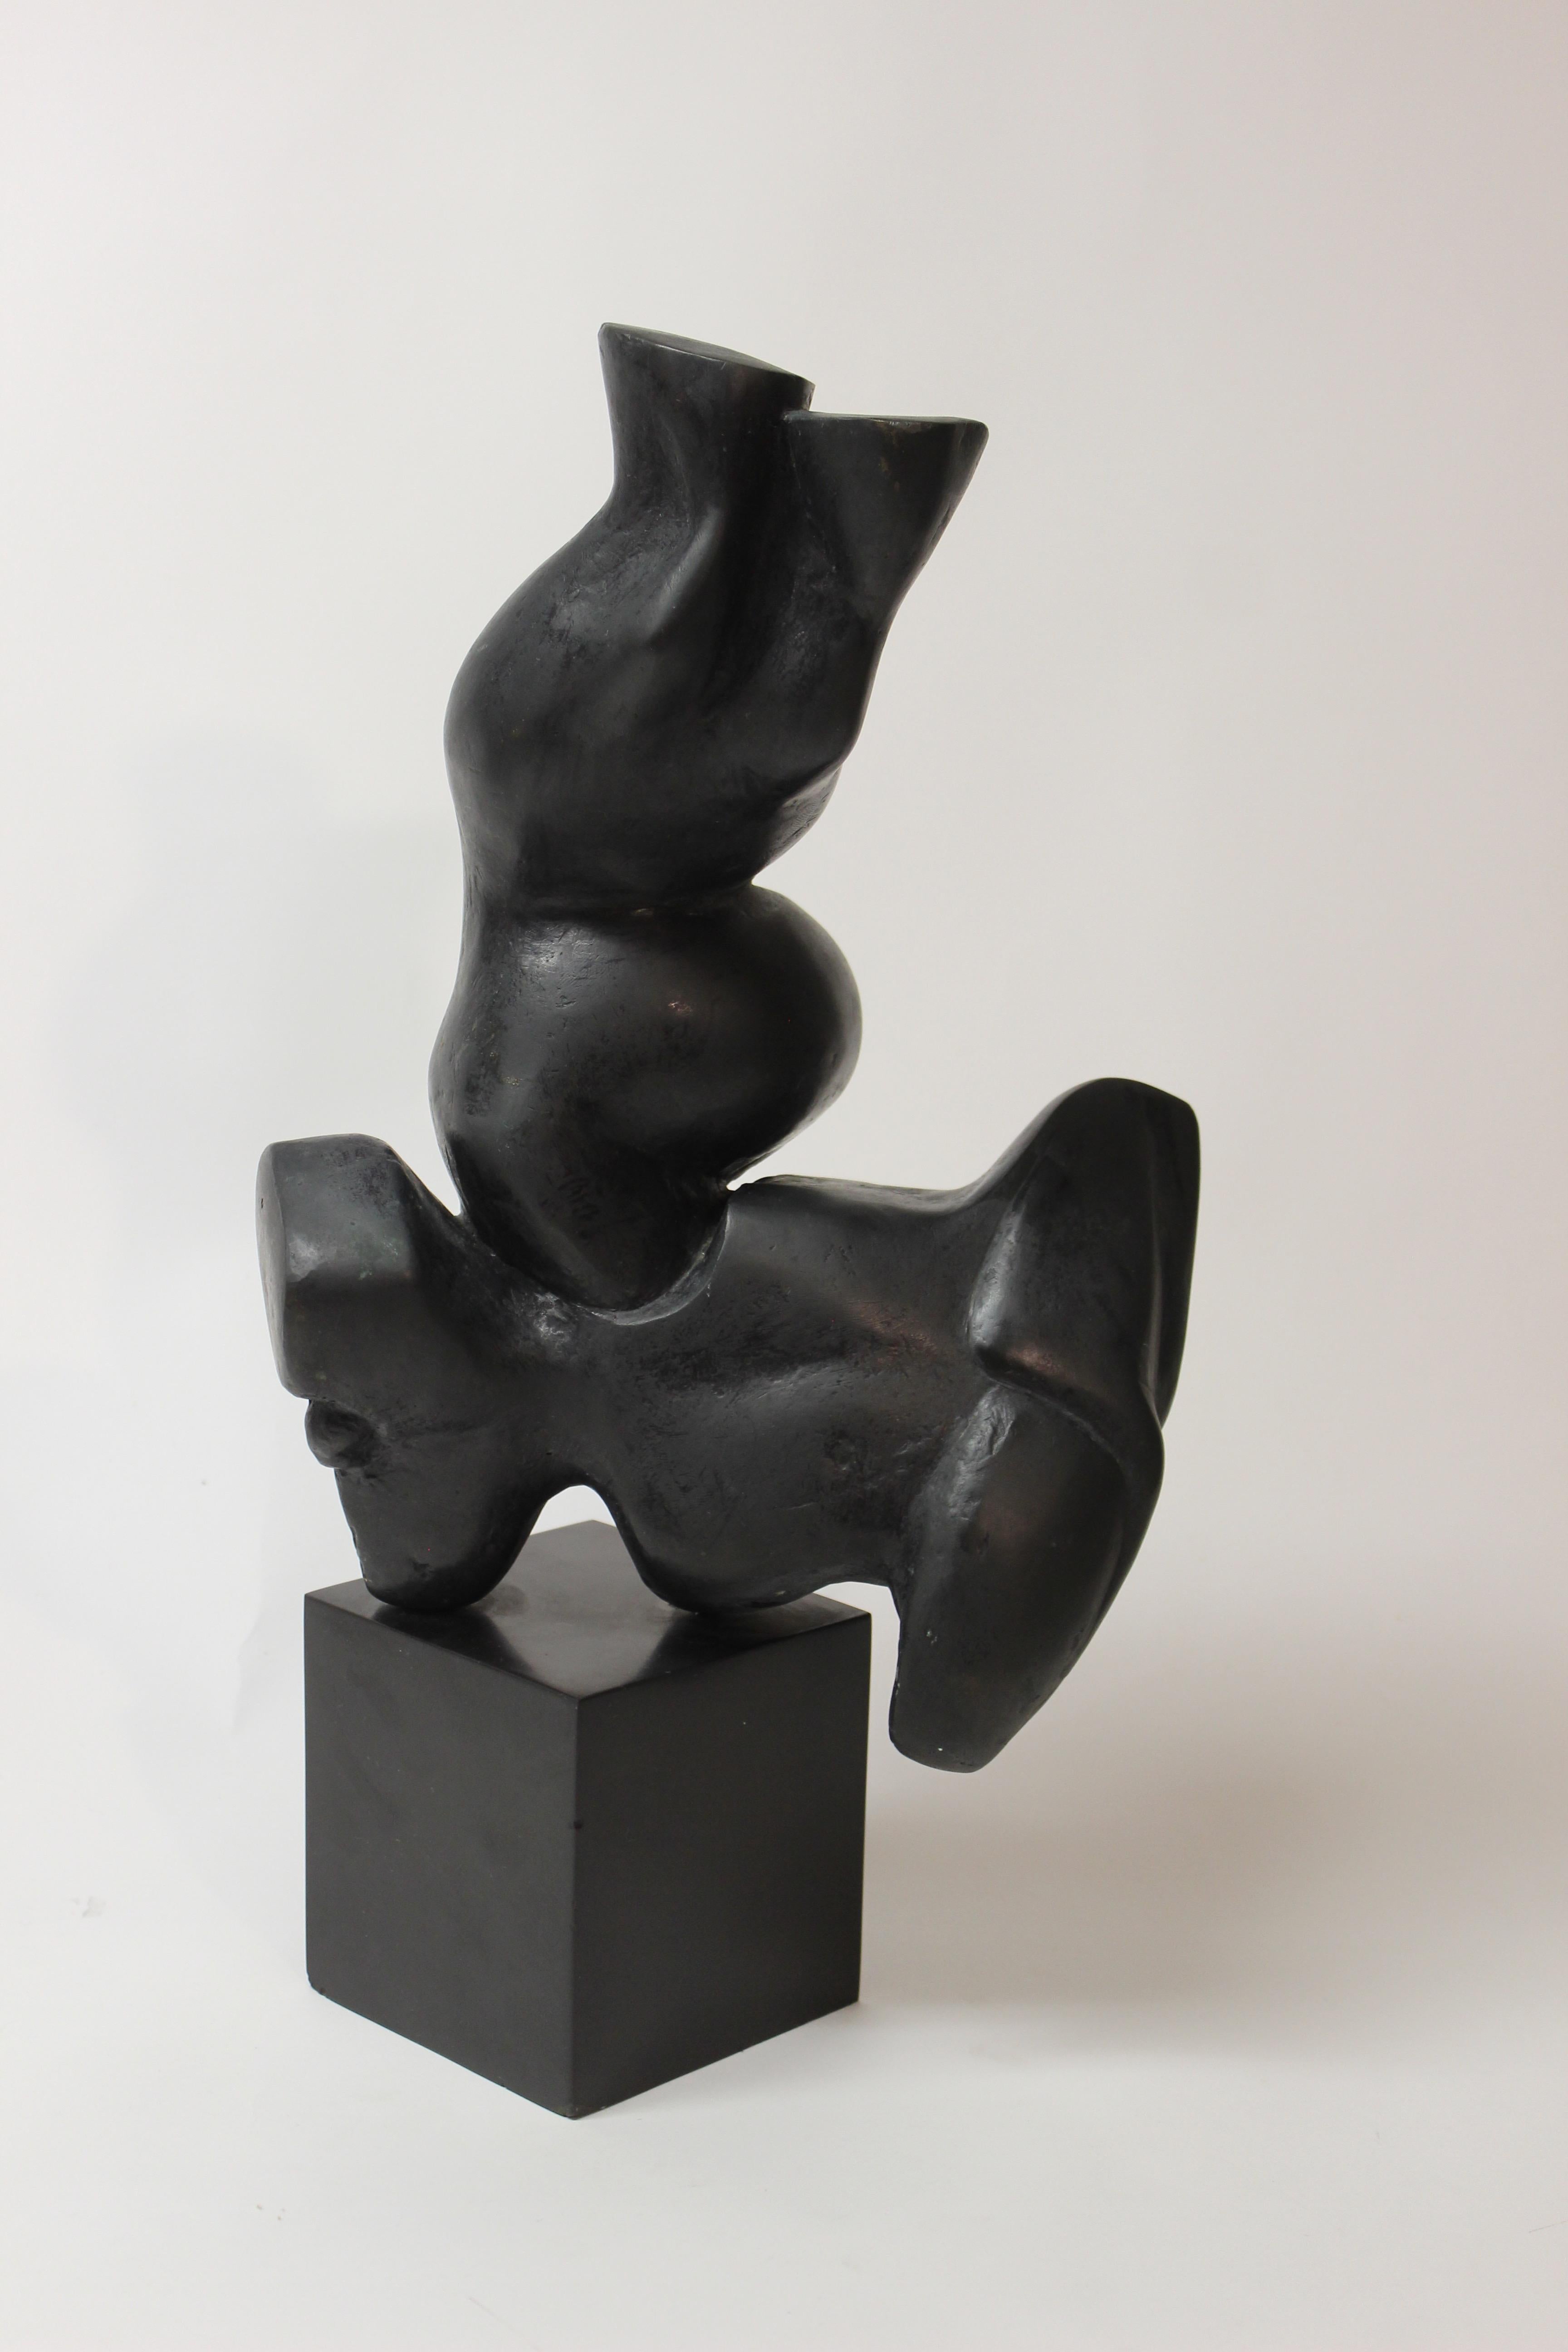 Abstract bronze sculpture by Elbert Weinberg.